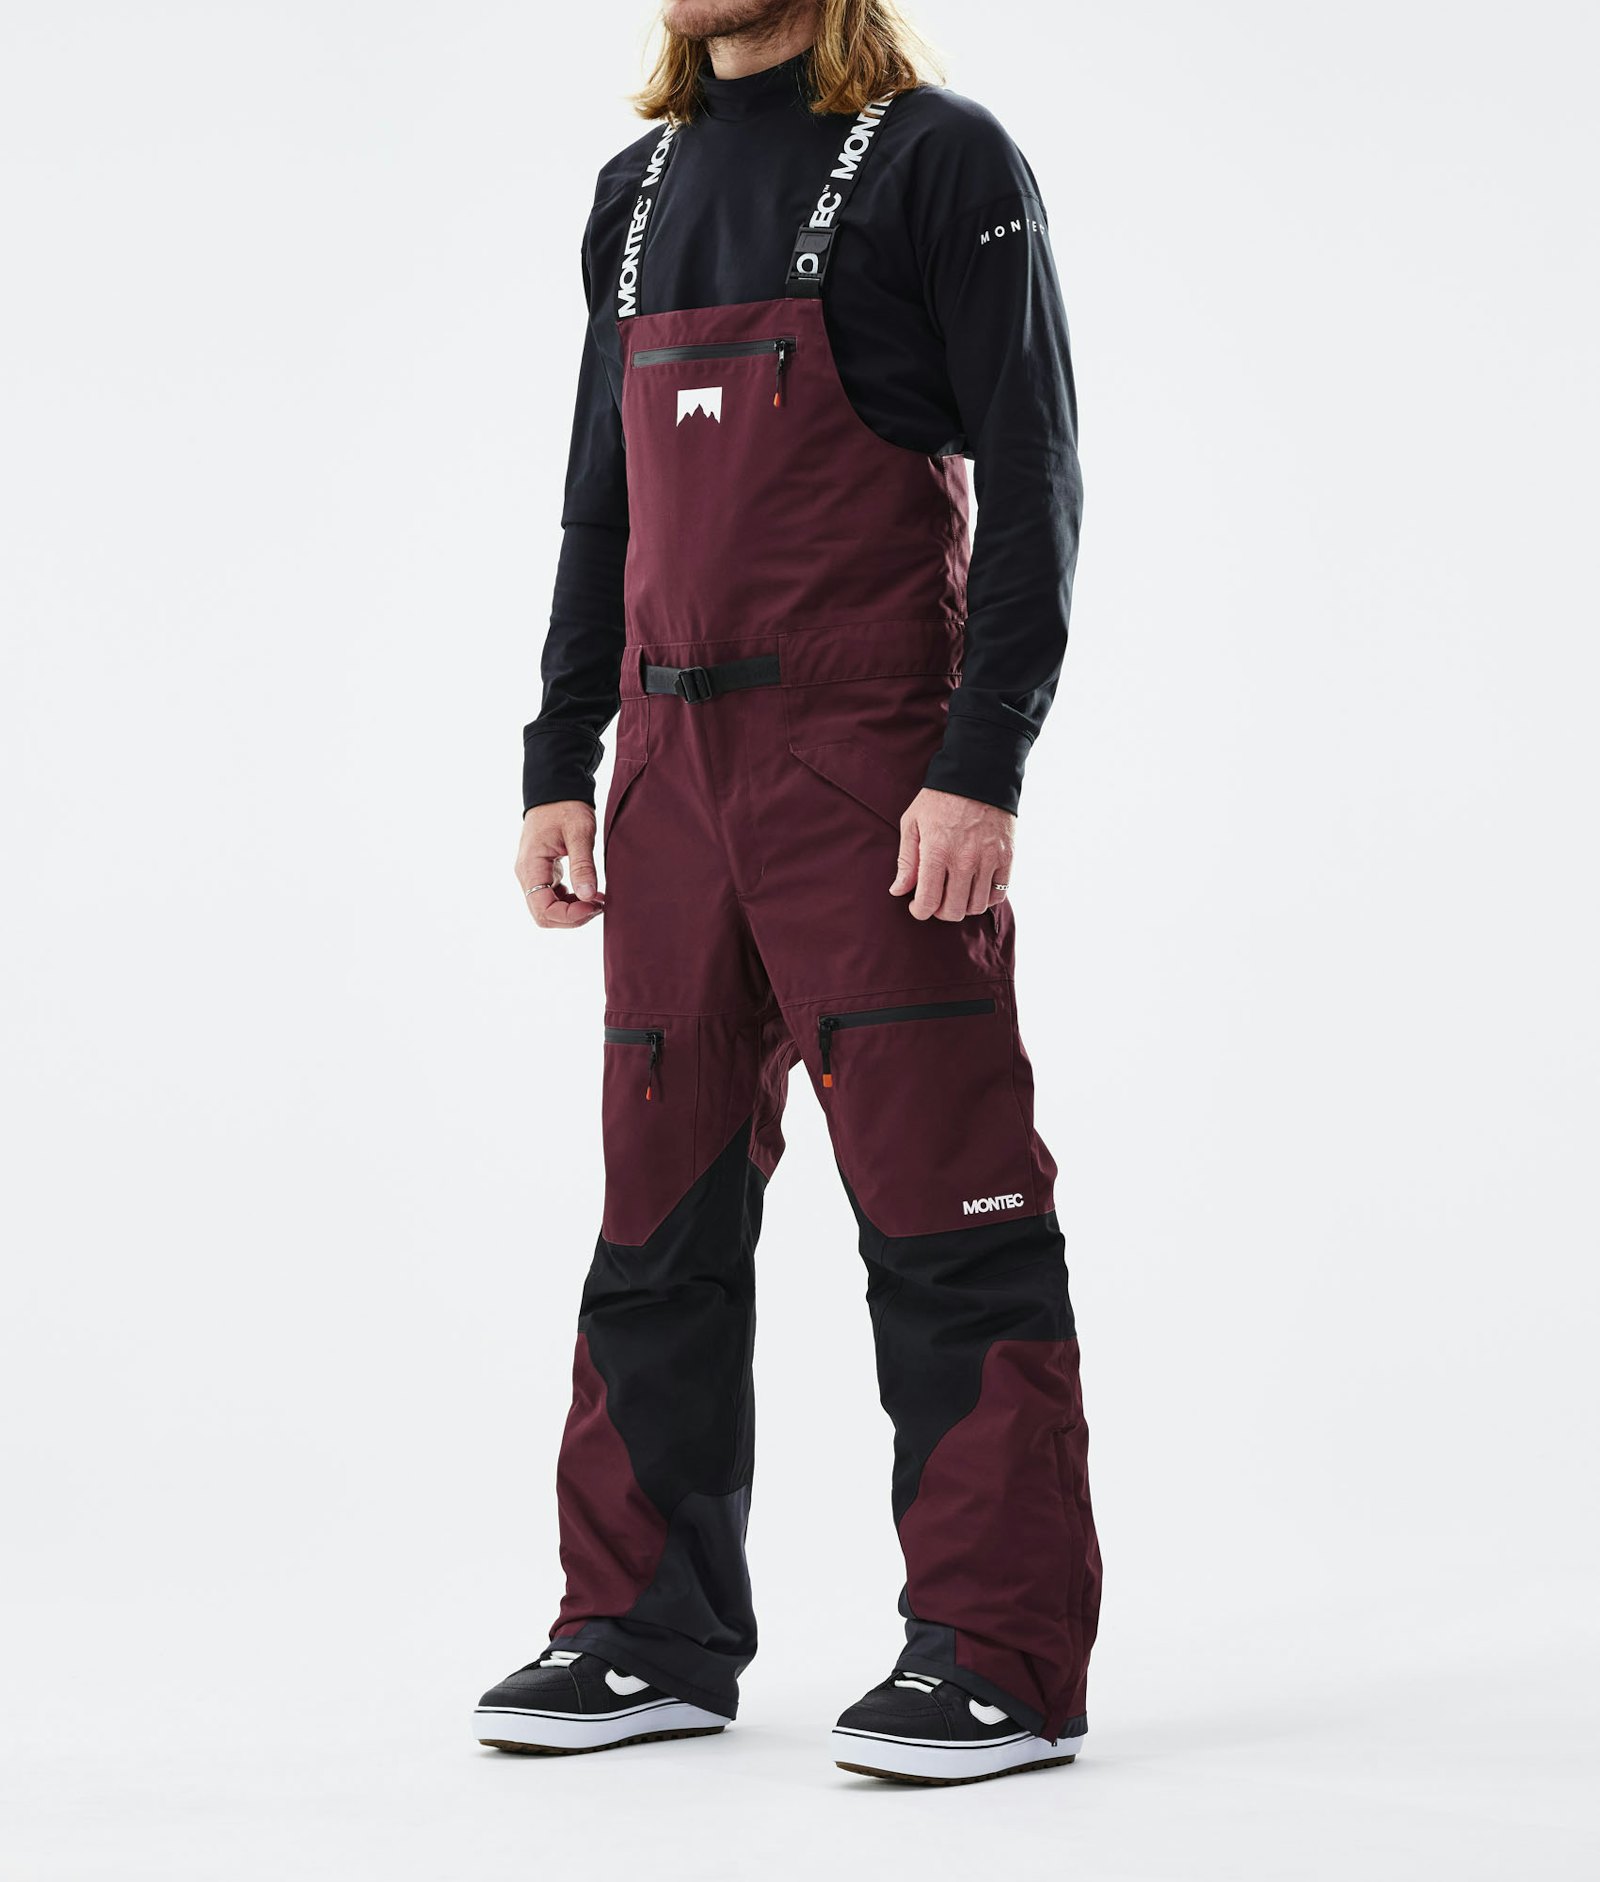 Moss 2021 Spodnie Snowboardowe Mężczyźni Burgundy/Black